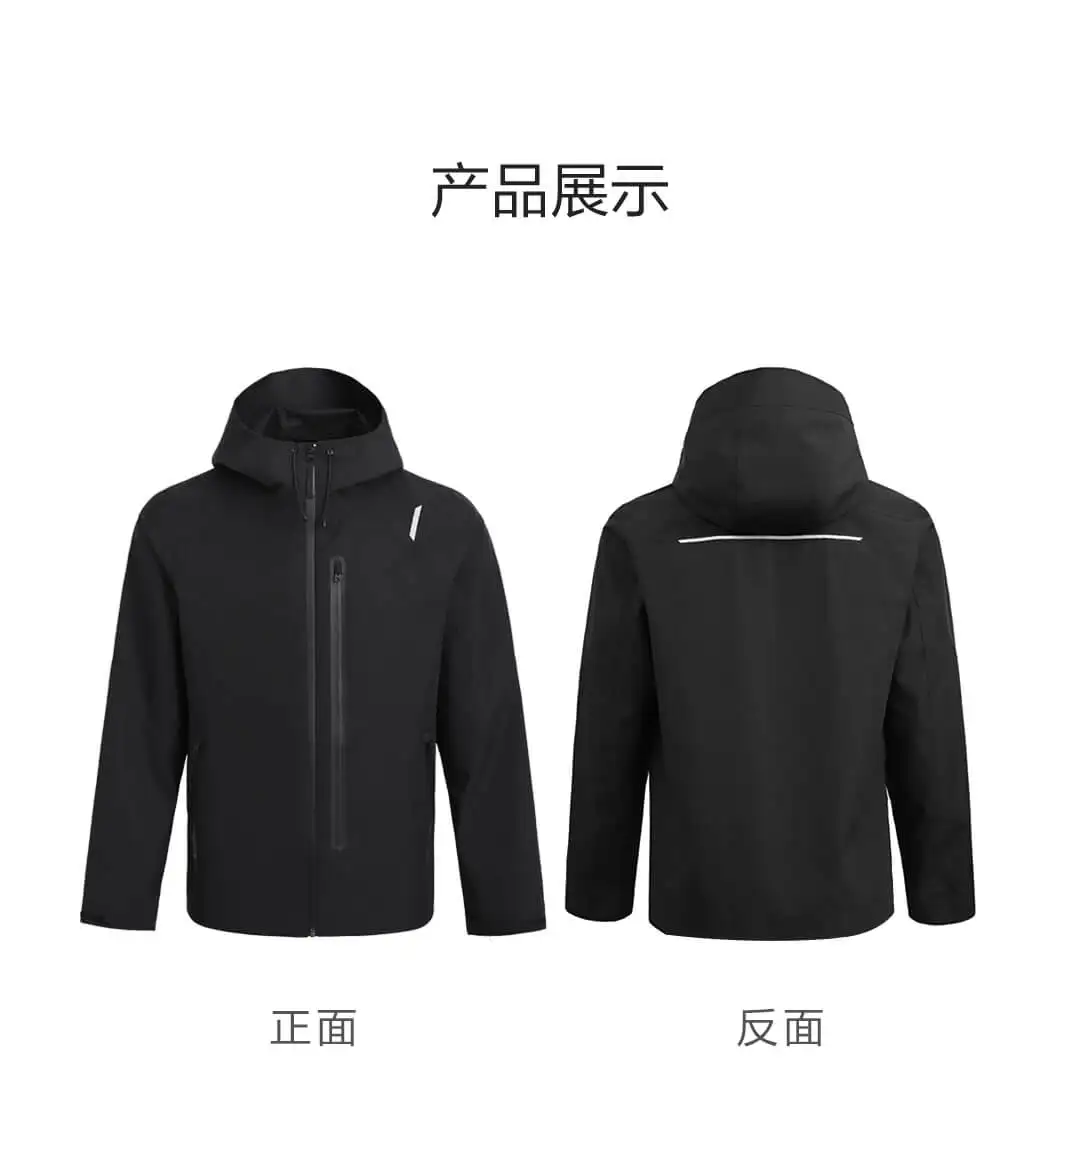 Xiaomi Youpin хлопковая куртка для всех погодных условий, ветрозащитная Водонепроницаемая практичная многофункциональная застежка-молния, держатель для телефона - Цвет: M